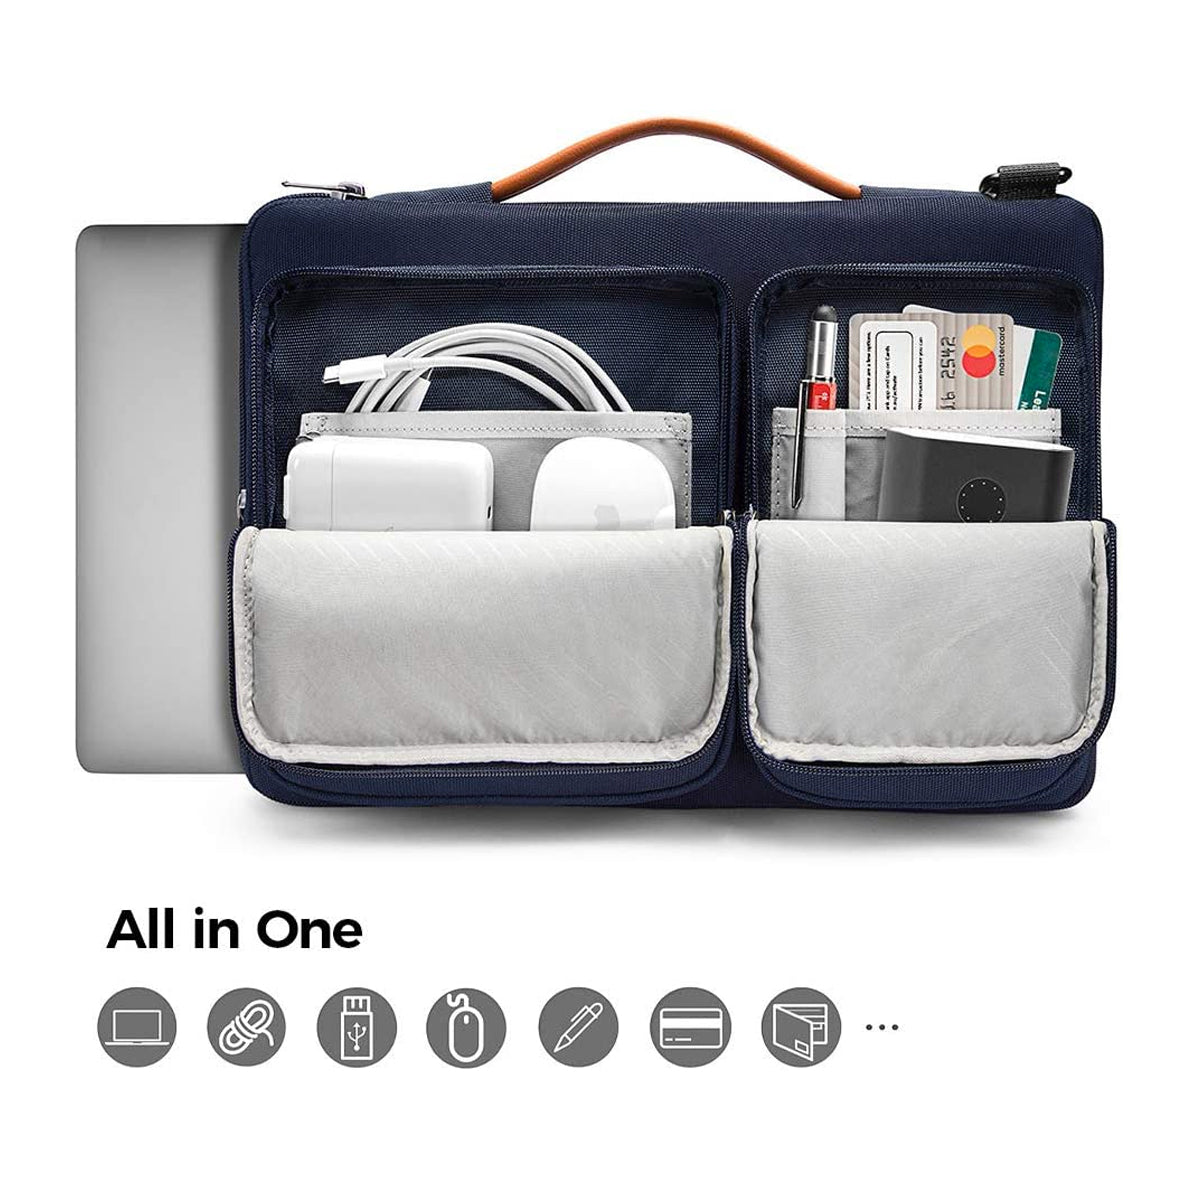 Tomtoc Defender-A42 Laptop Shoulder Bag for MacBook 13″ to 16″